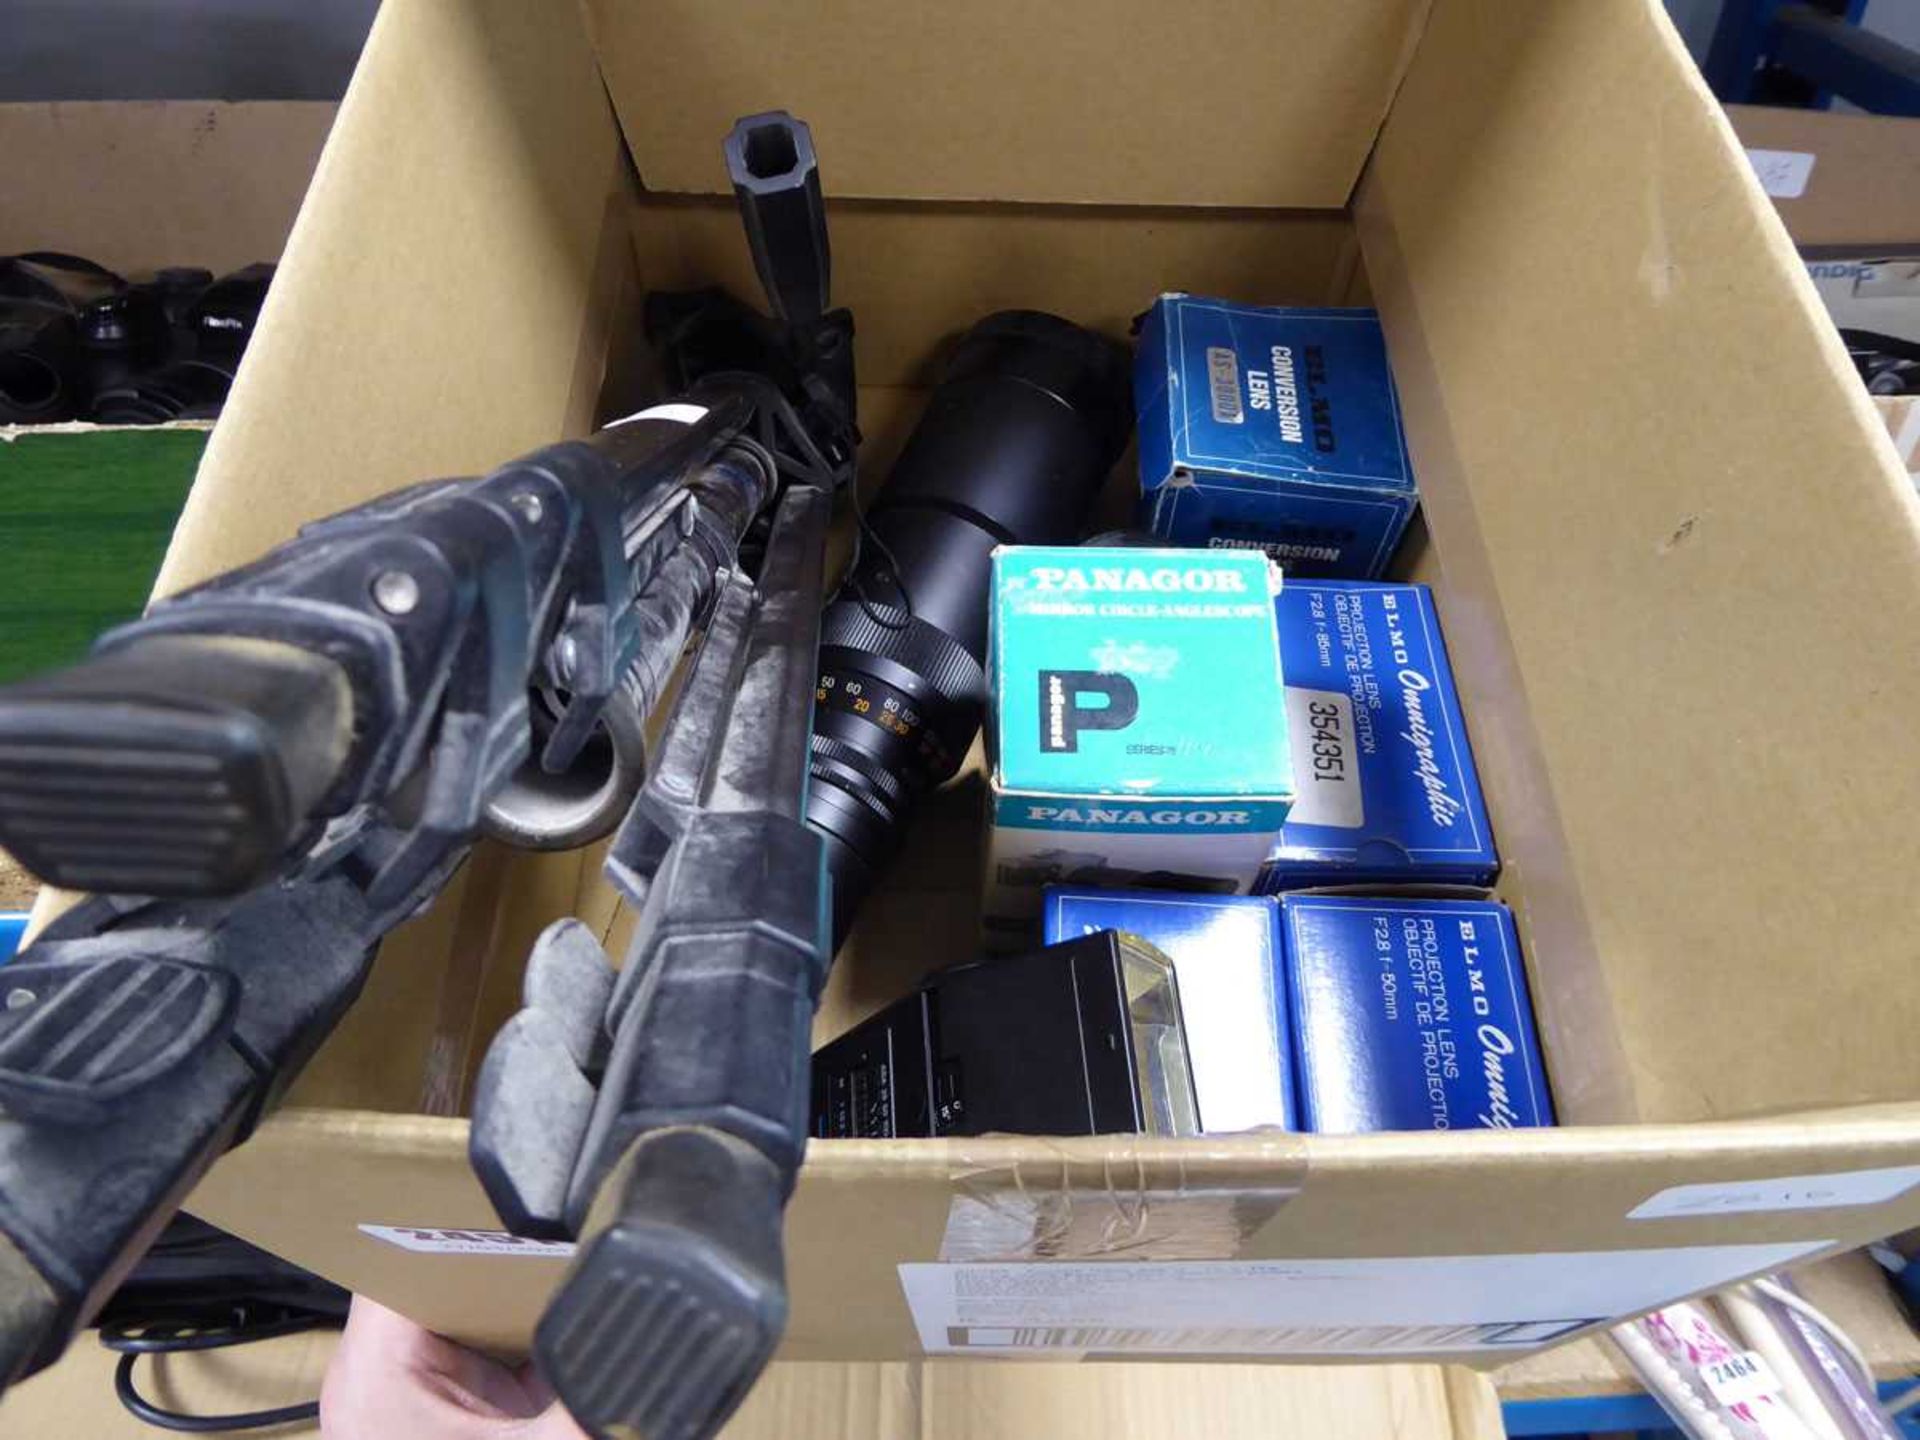 Box of various camera accessories, tripods, lenses etc